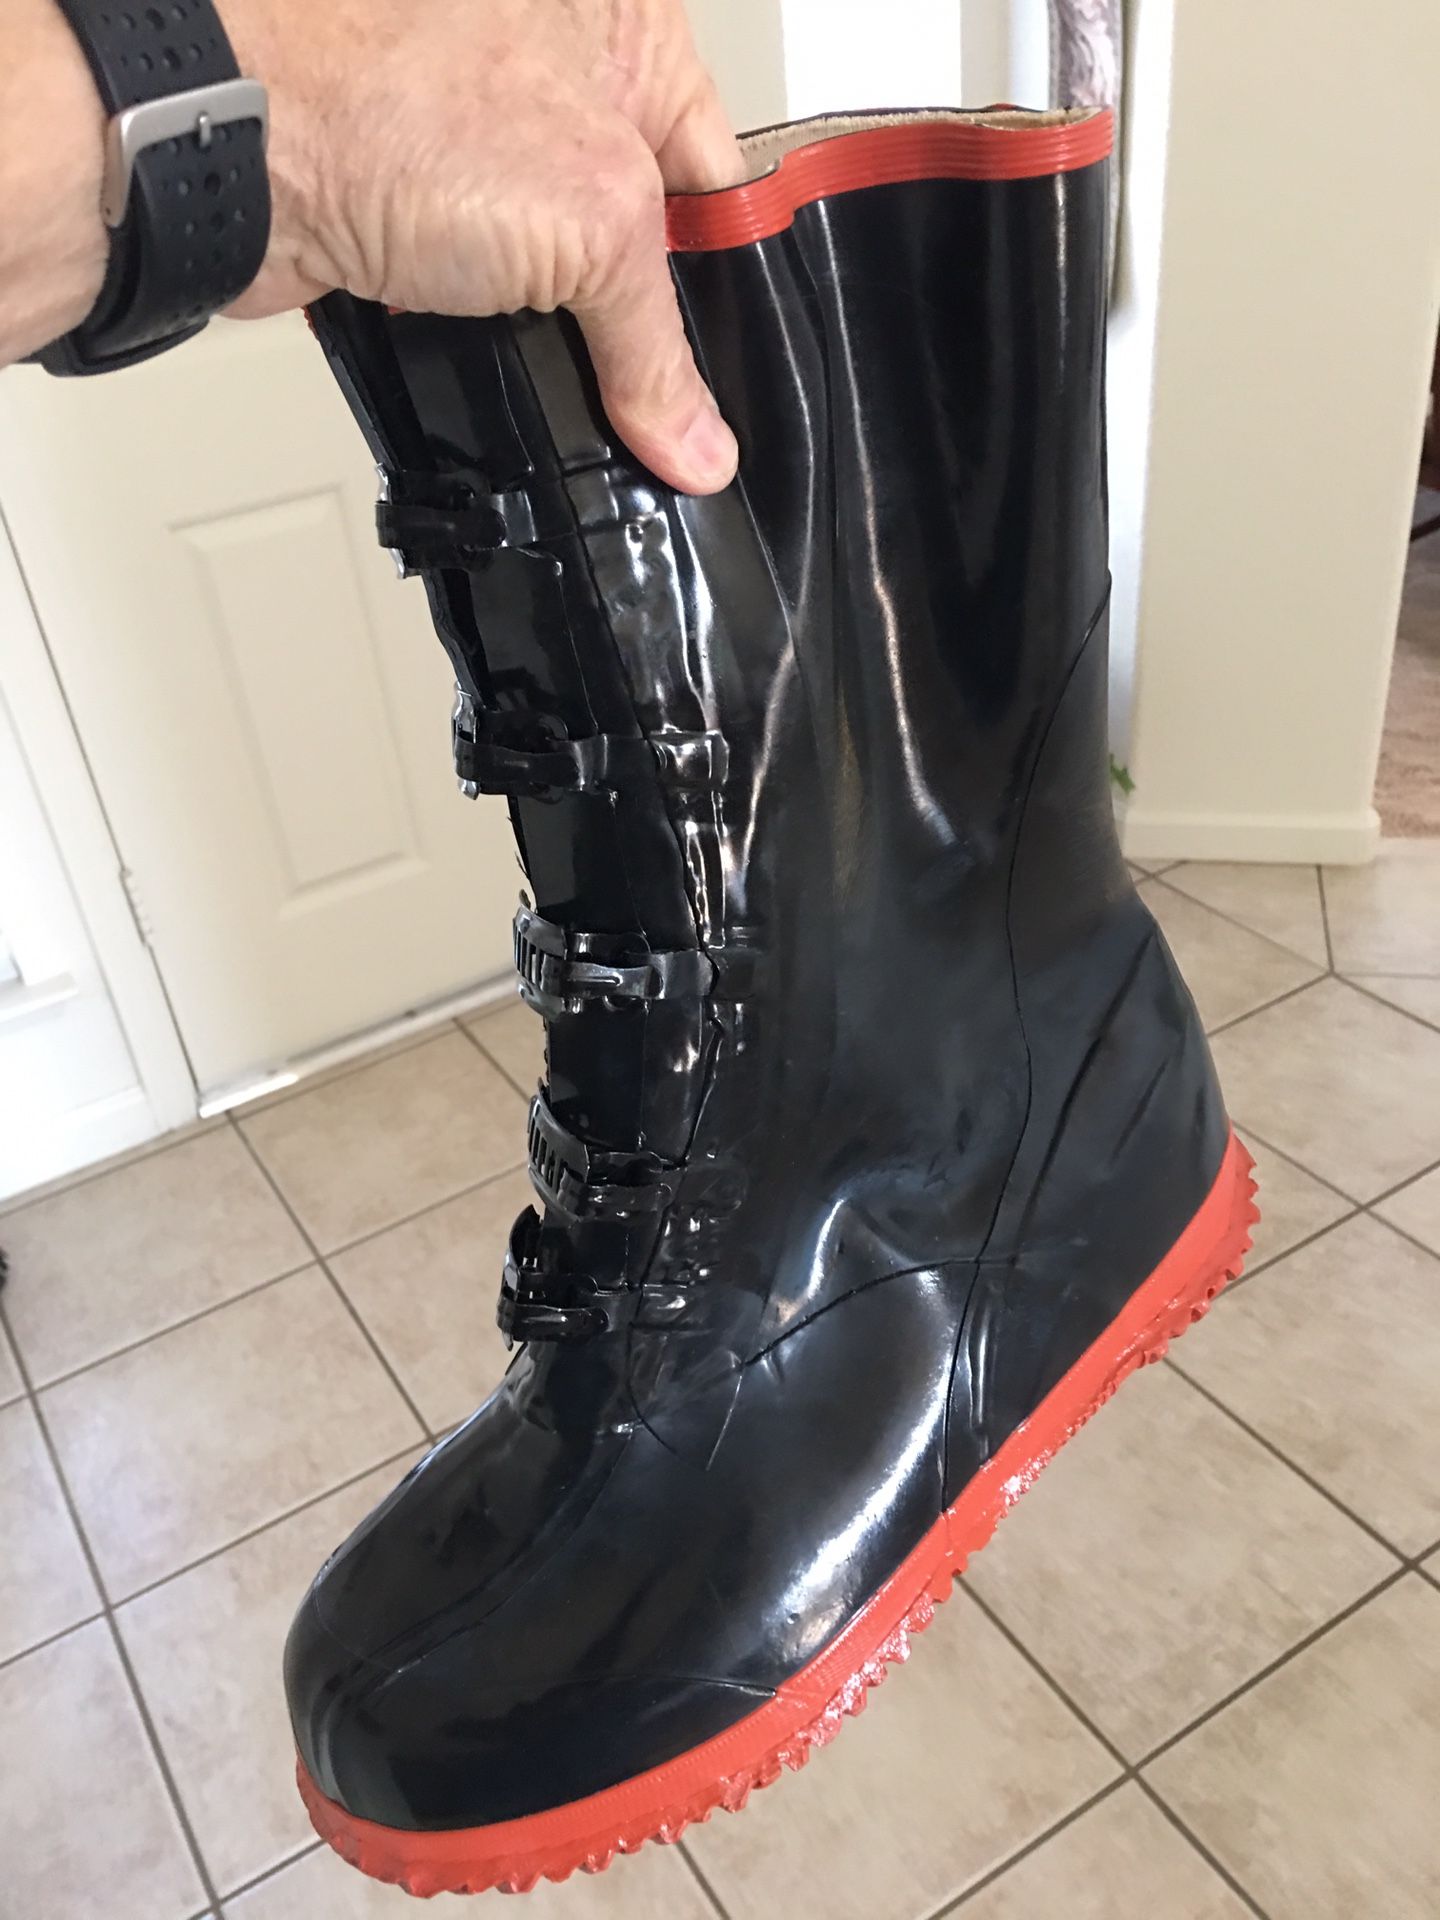 DUR-ABEL Men’s rain boots size 9 buckle-up front